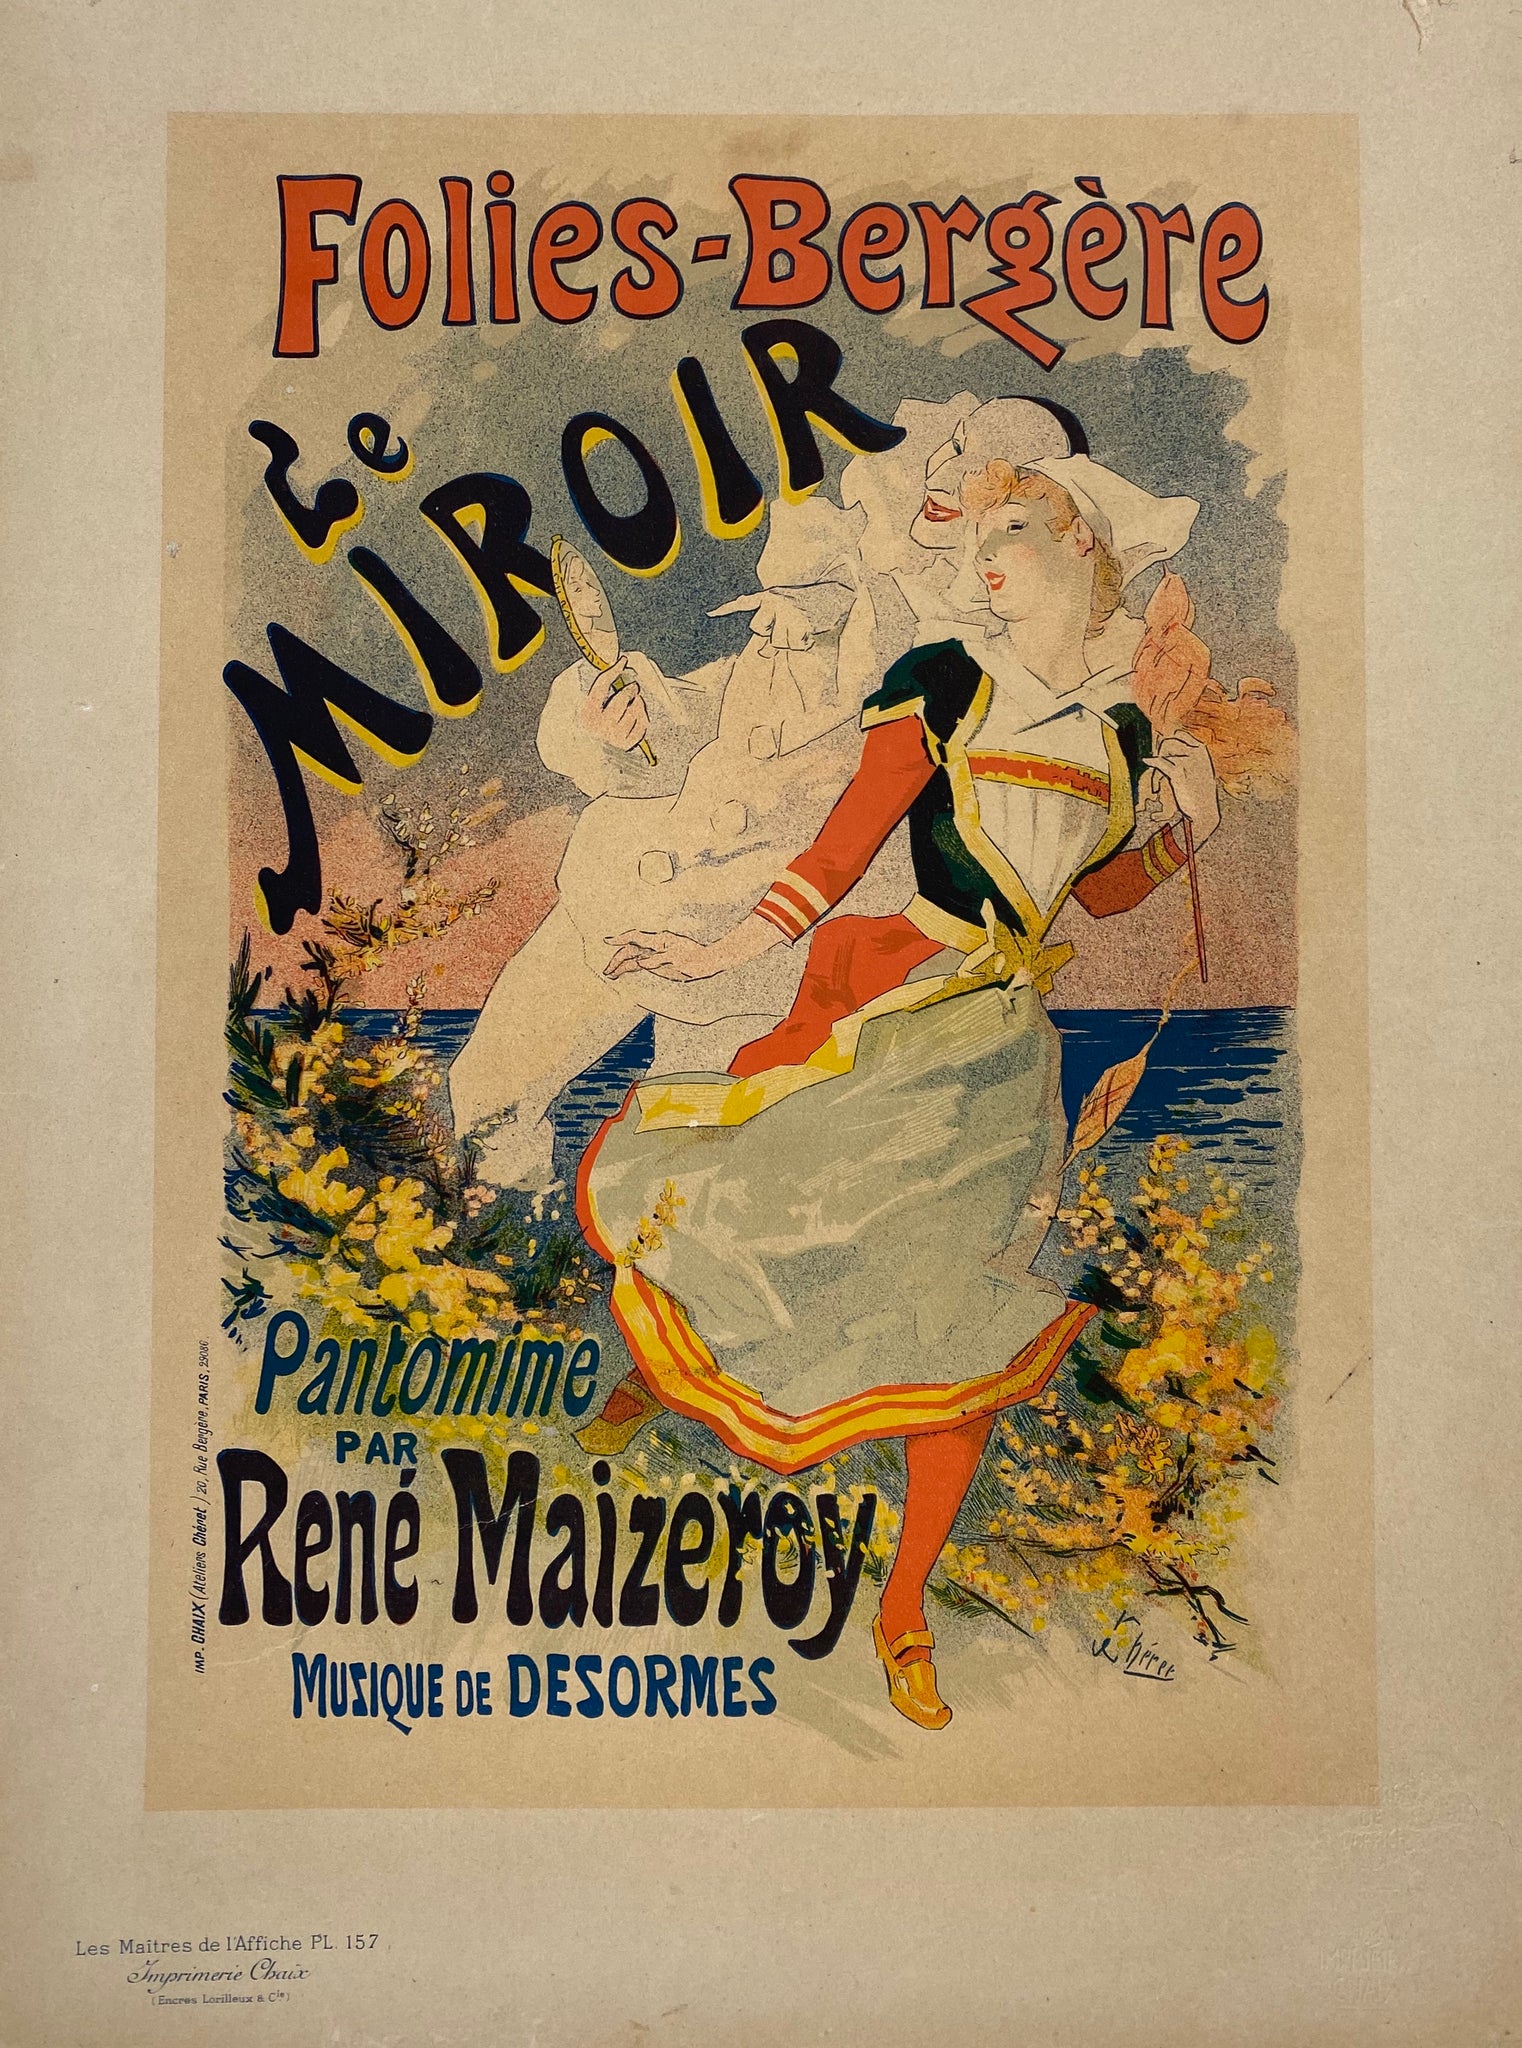 Maitre de l'affiche Planche 157 - Folie Bergère - Jules Cheret 1899